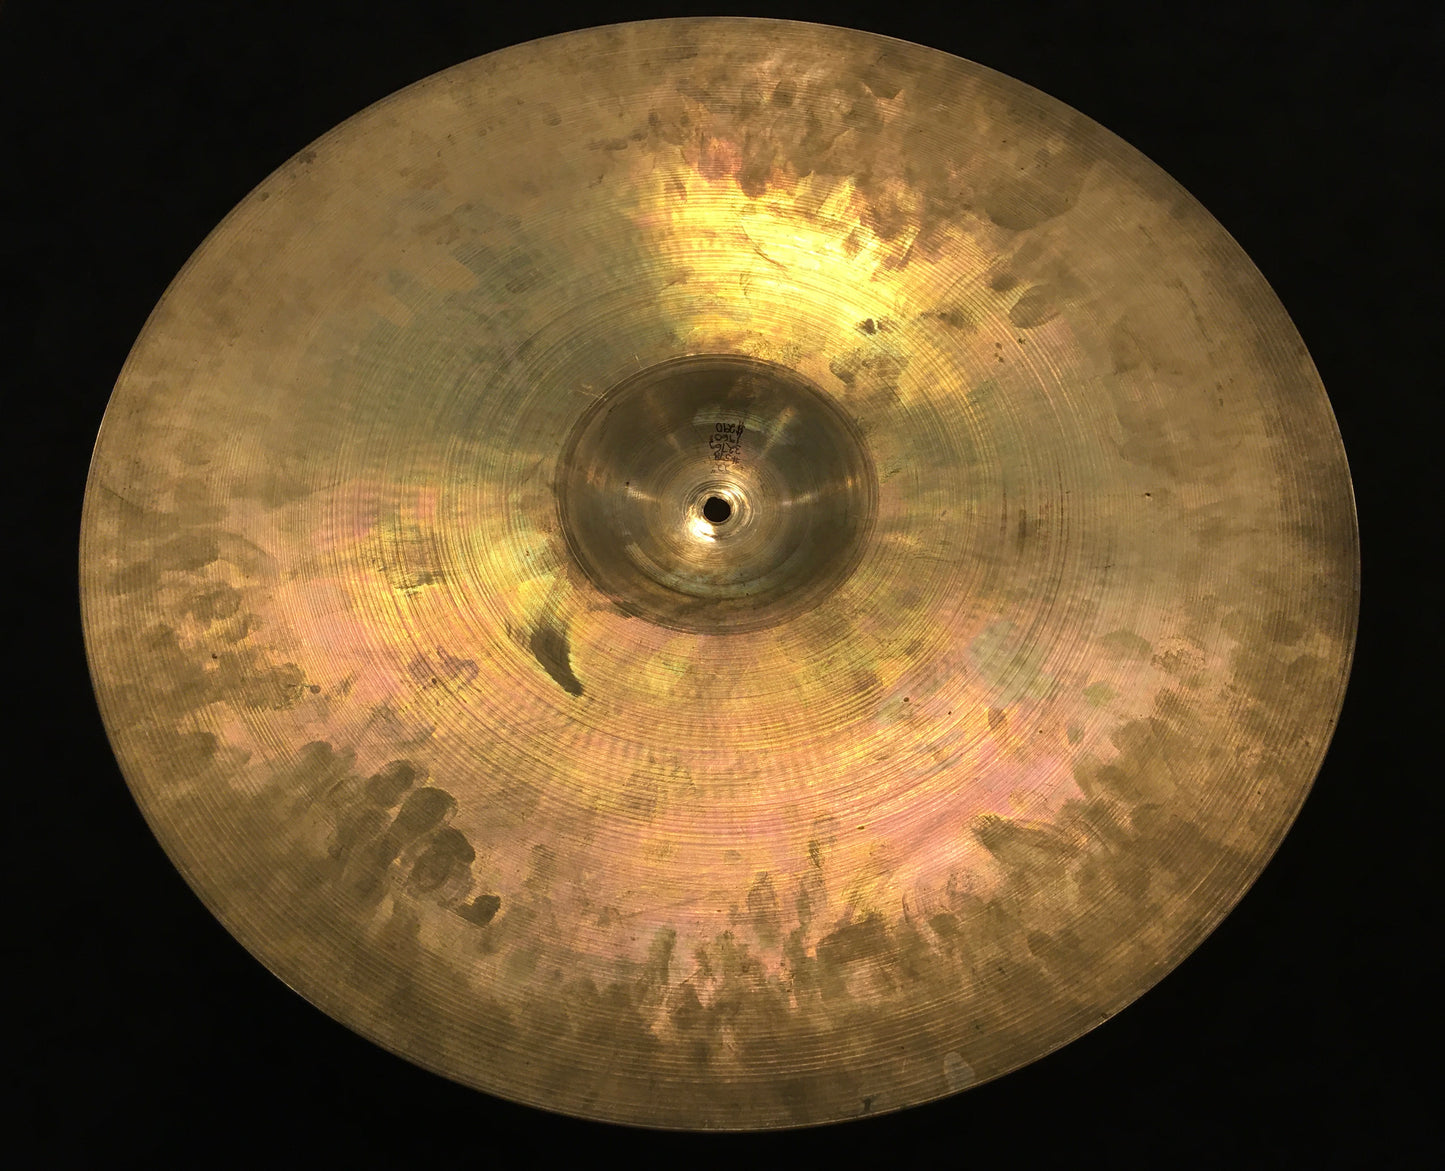 22" Zildjian A 1960s Ride Cymbal 3276g #578 *Video Demo*